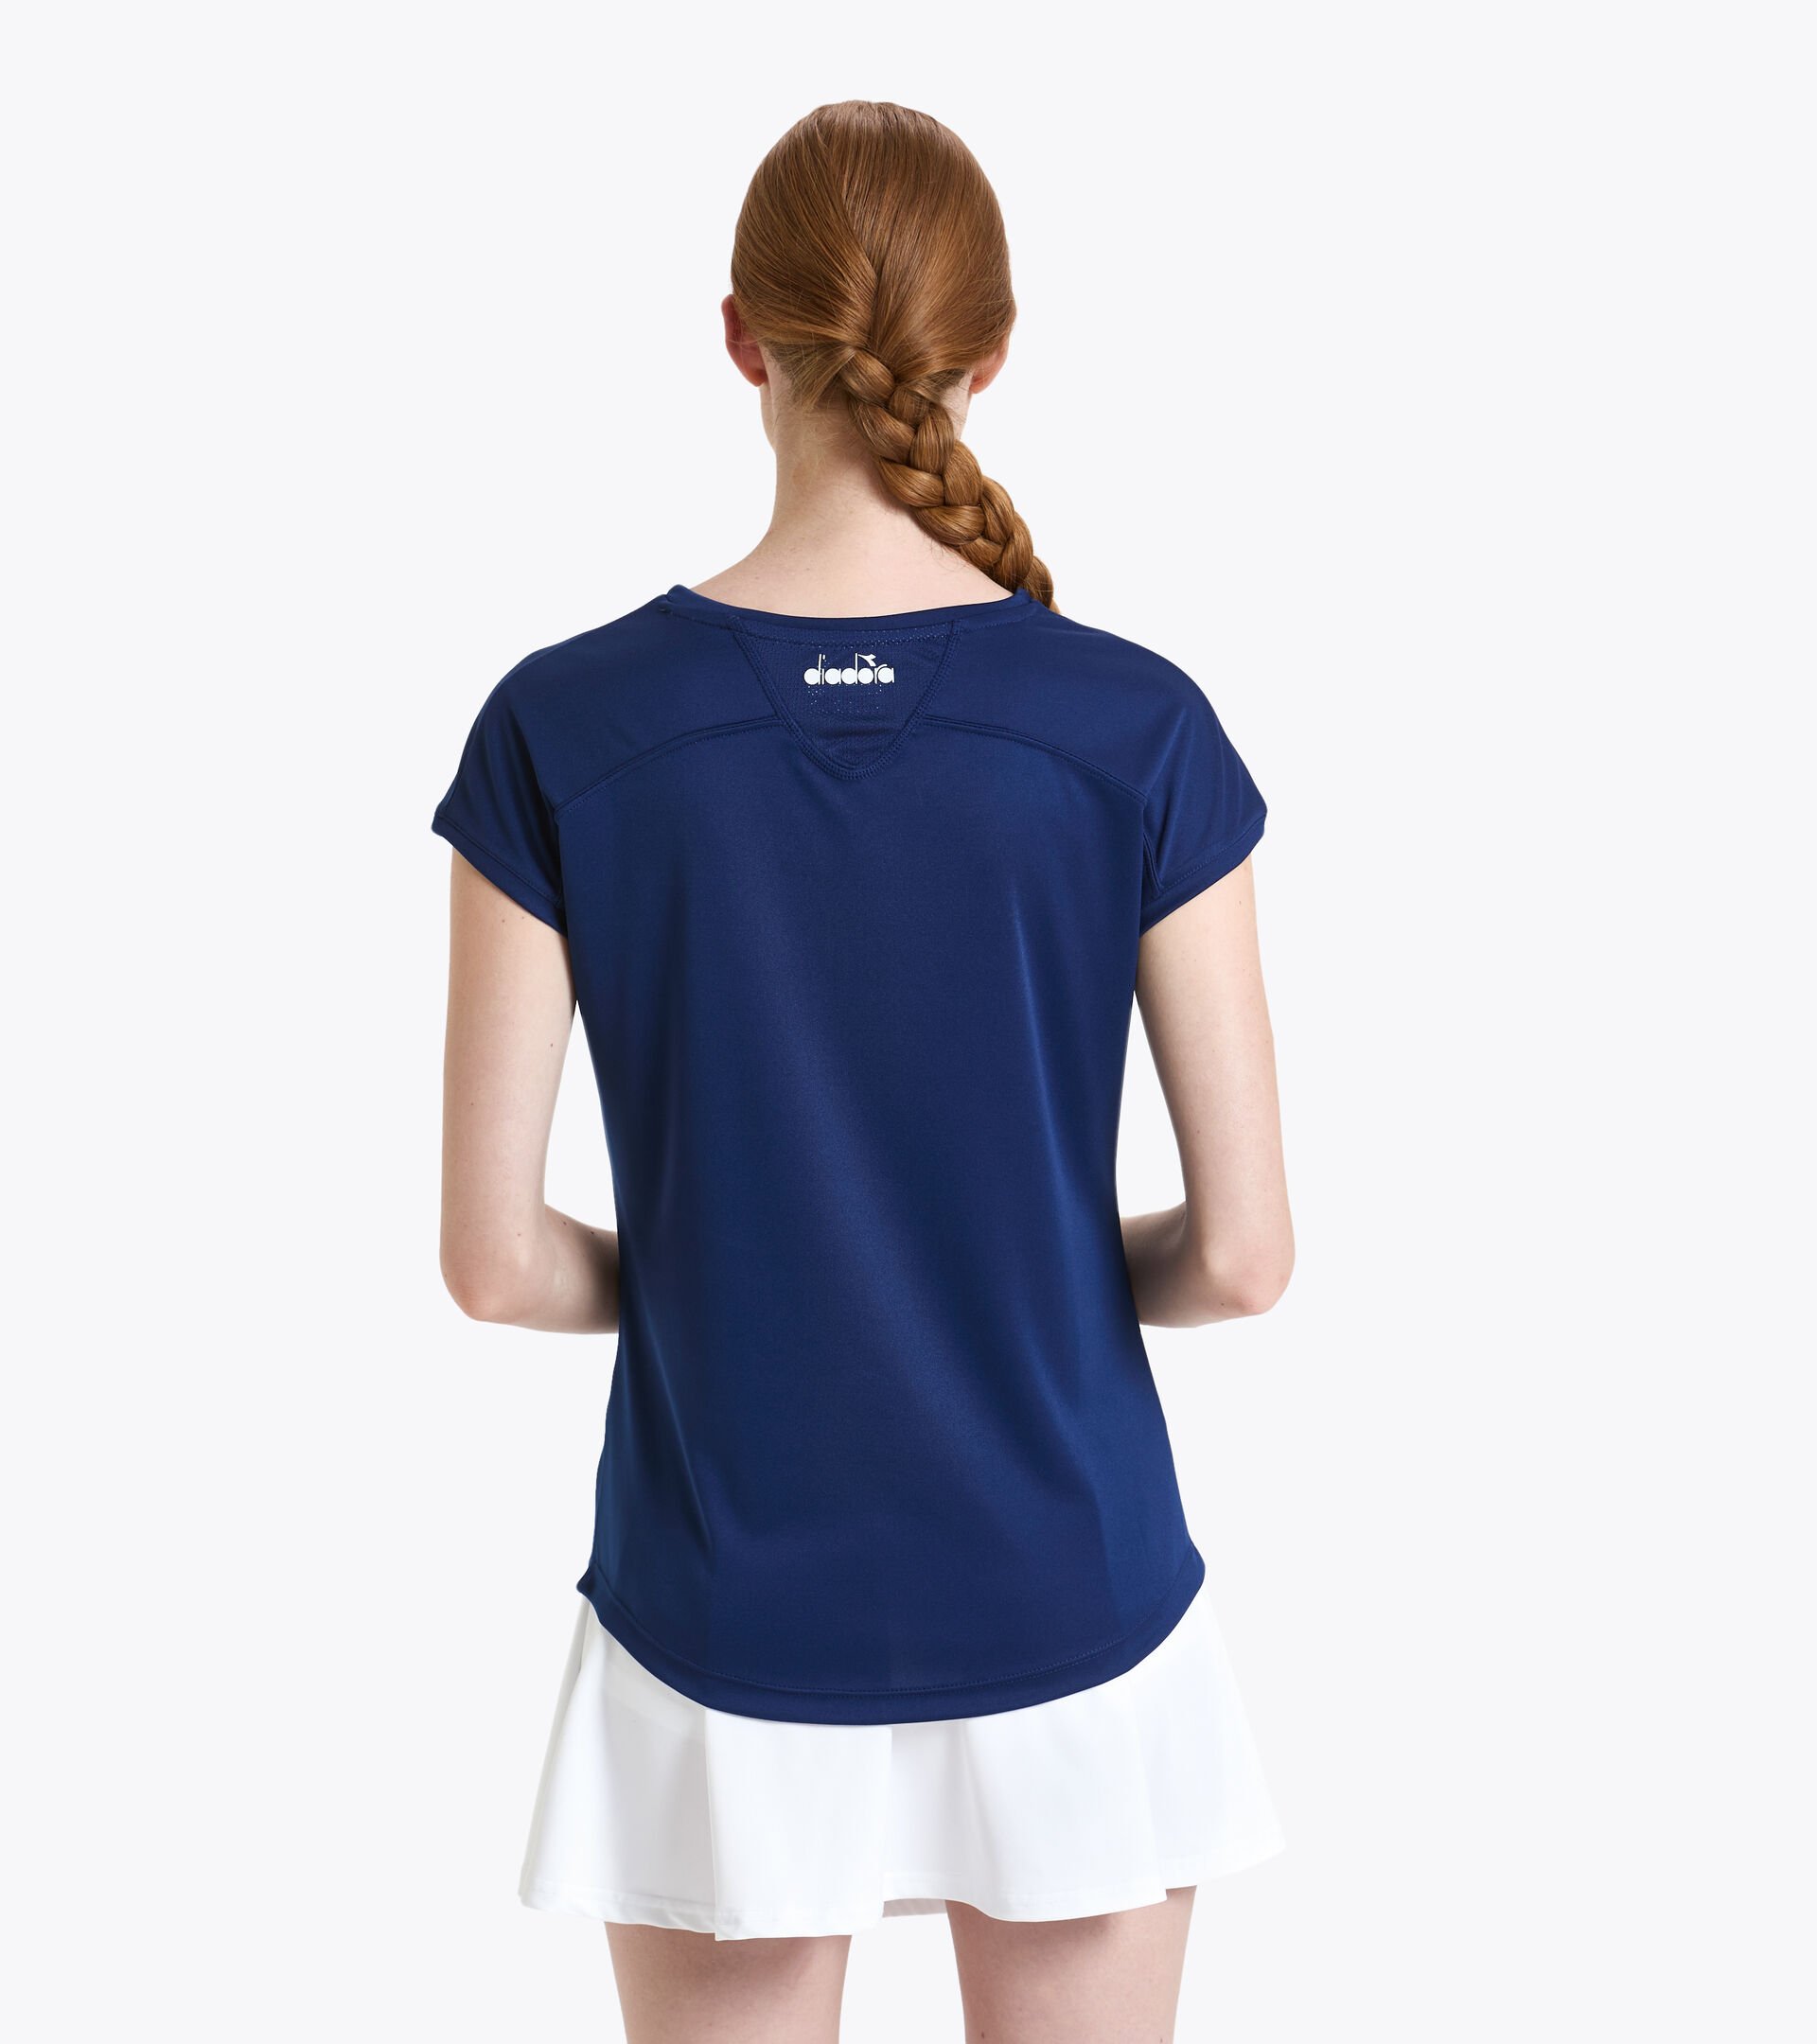 Tennis-T-Shirt - Damen L. T-SHIRT TEAM GUTBLAU - Diadora